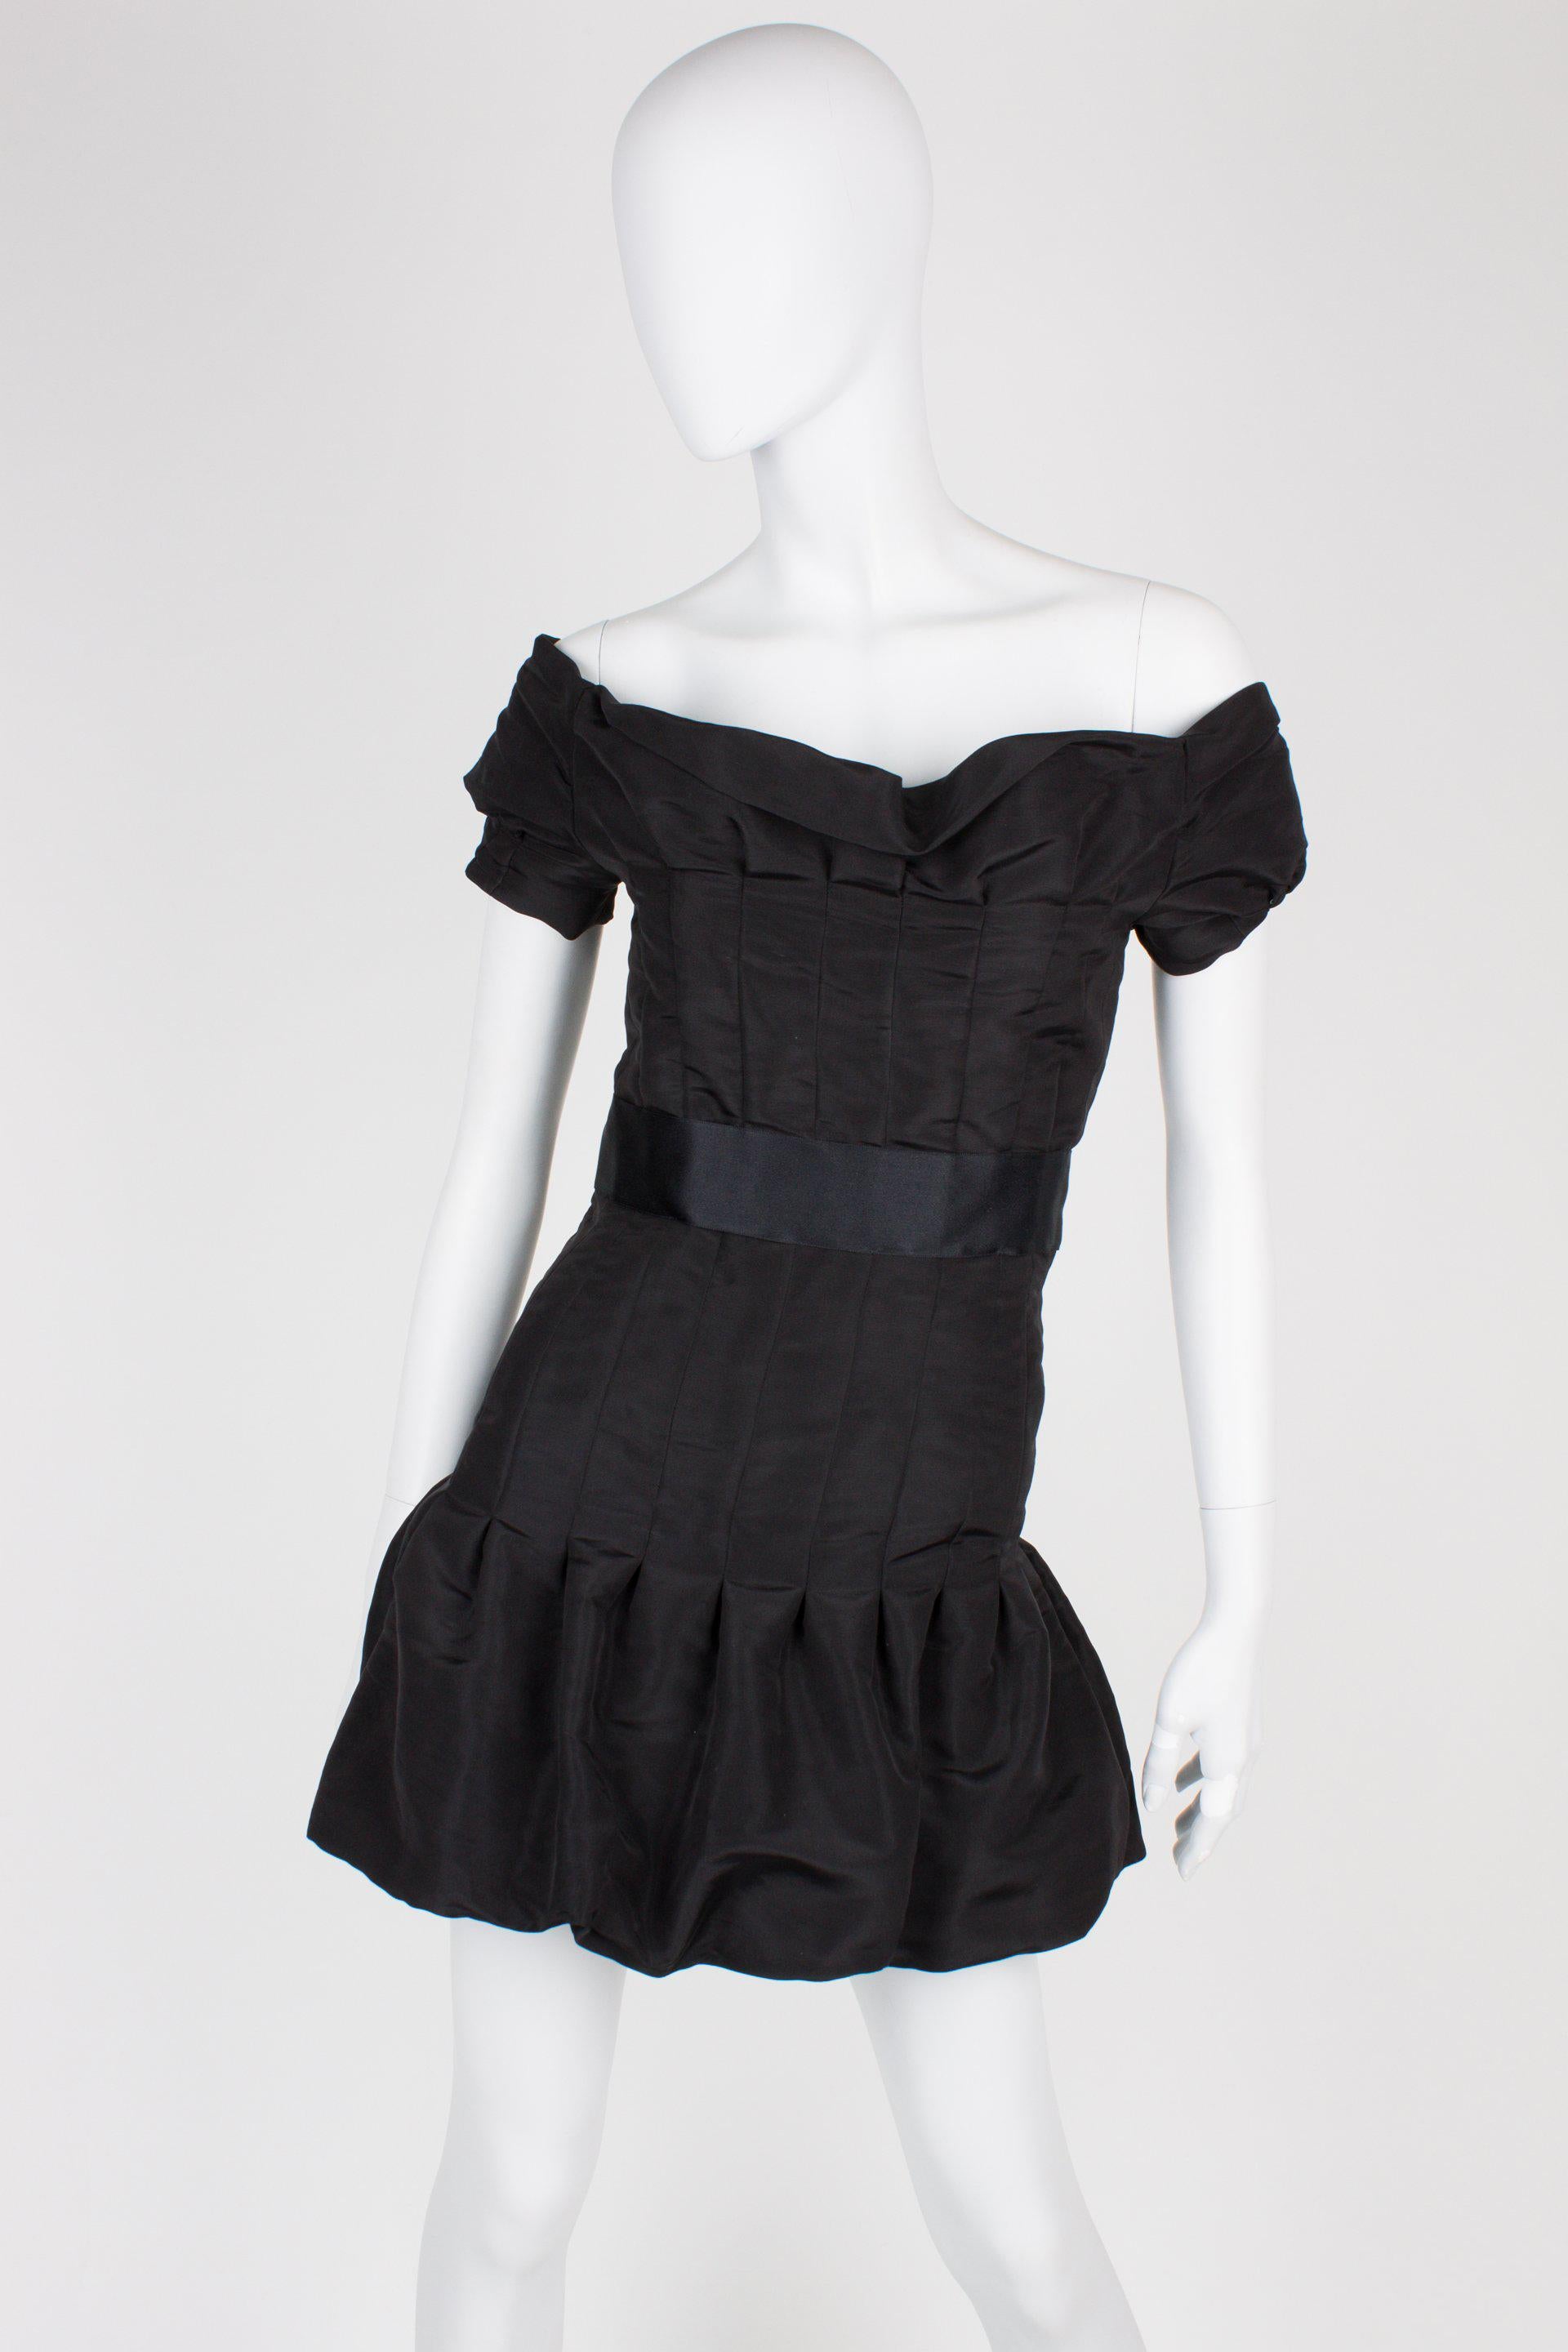 Adembenemend mooi jurkje van Chanel uit de Runway Collectie van 2005.

Off-shoulder dress met een kort mouwtje en een brede glanzende zijden band in de taille. Sluiting op de achterzijde met negen zwarte drukknopen met CC-logo in het